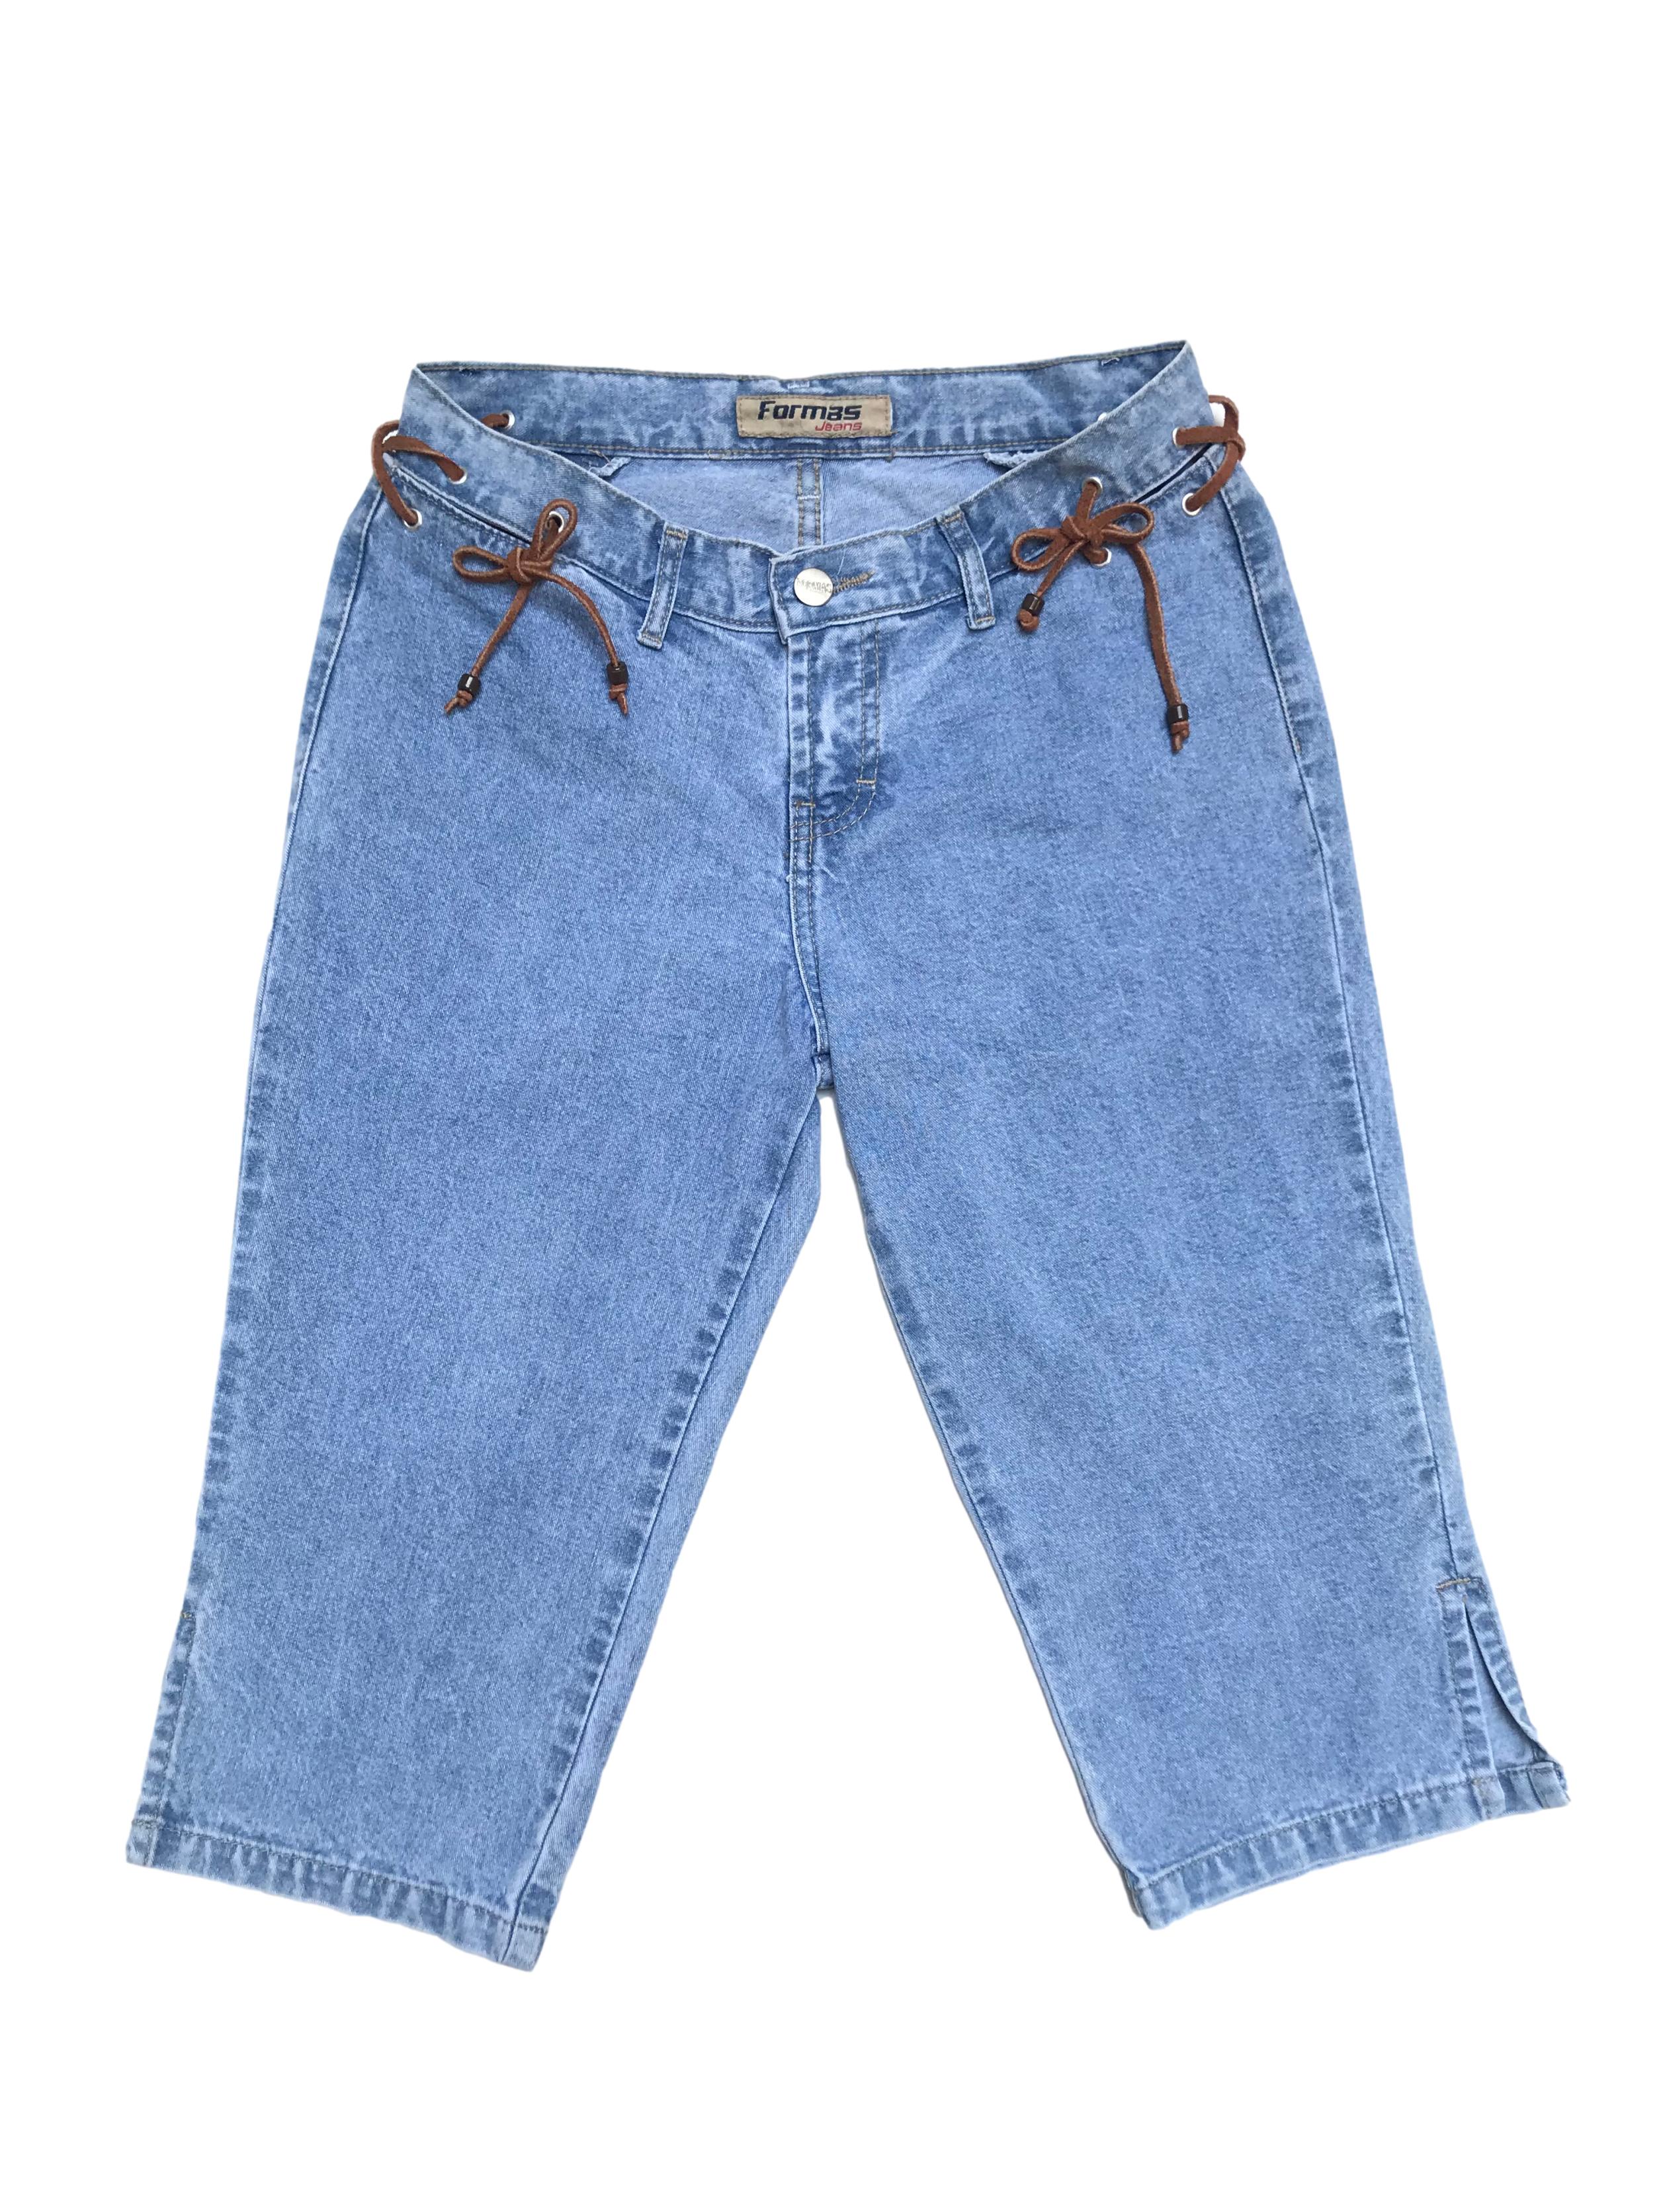 Capri vintage de jean con aberturas y tiras de gamuza en la pretina. Cintura 70cm Largo 62cm